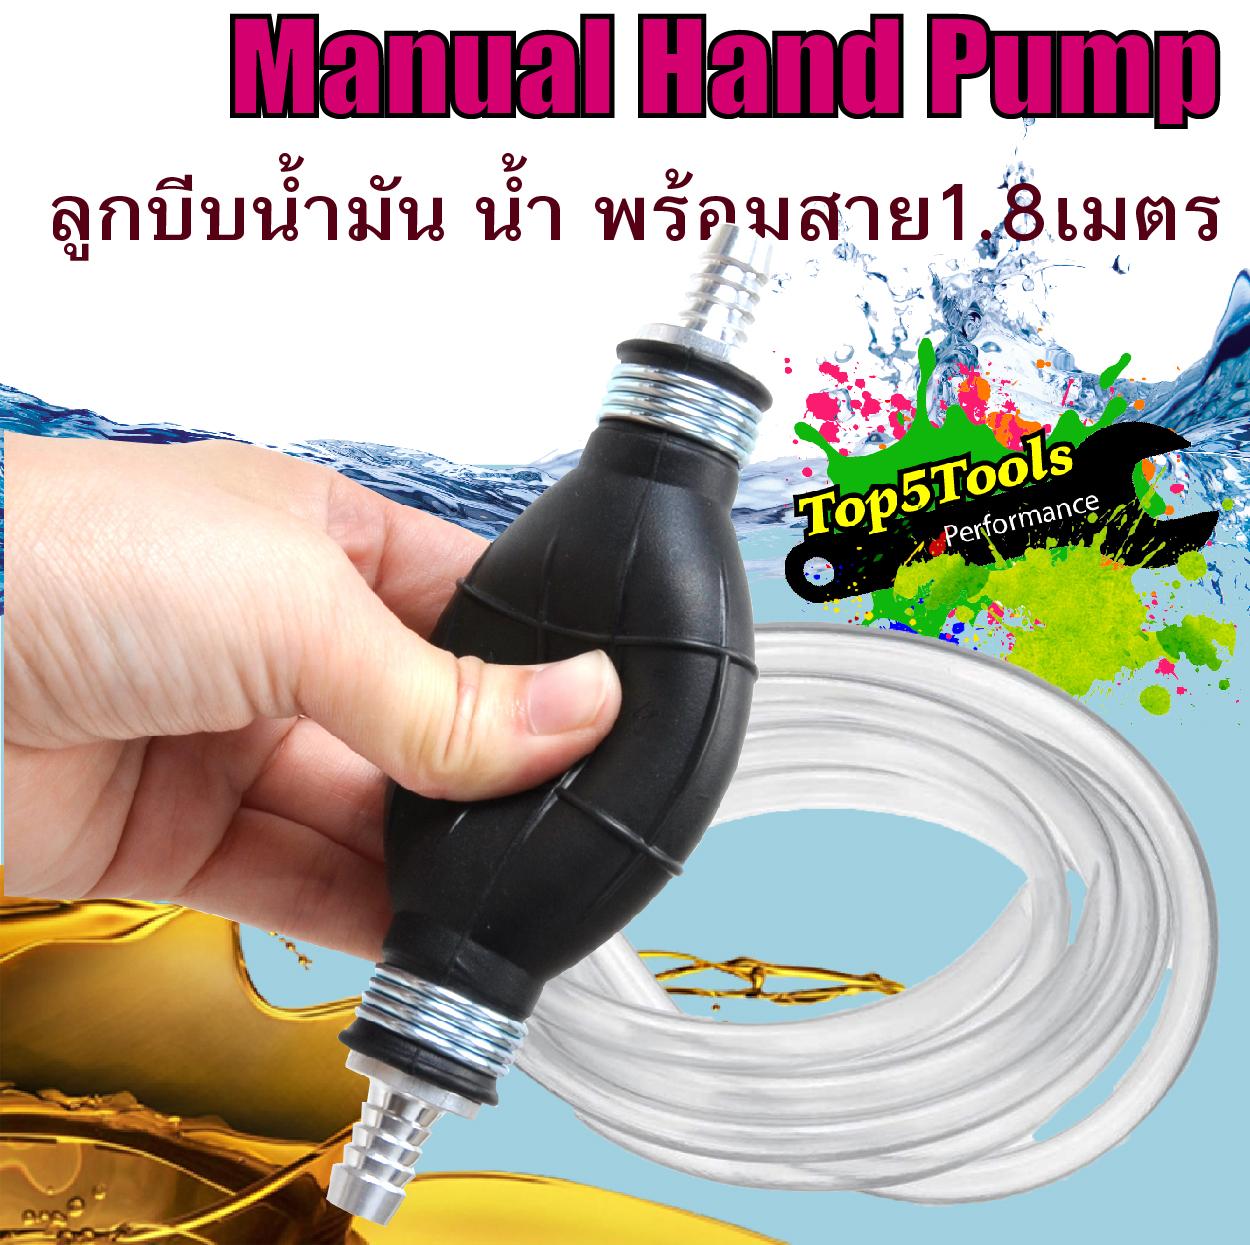 ปั้มน้ำ ลูกบีบ น้ำ น้ำมัน ปั้มน้ำมัน Manual Hand Pump พร้อมสายยาว 1.8 เมตร